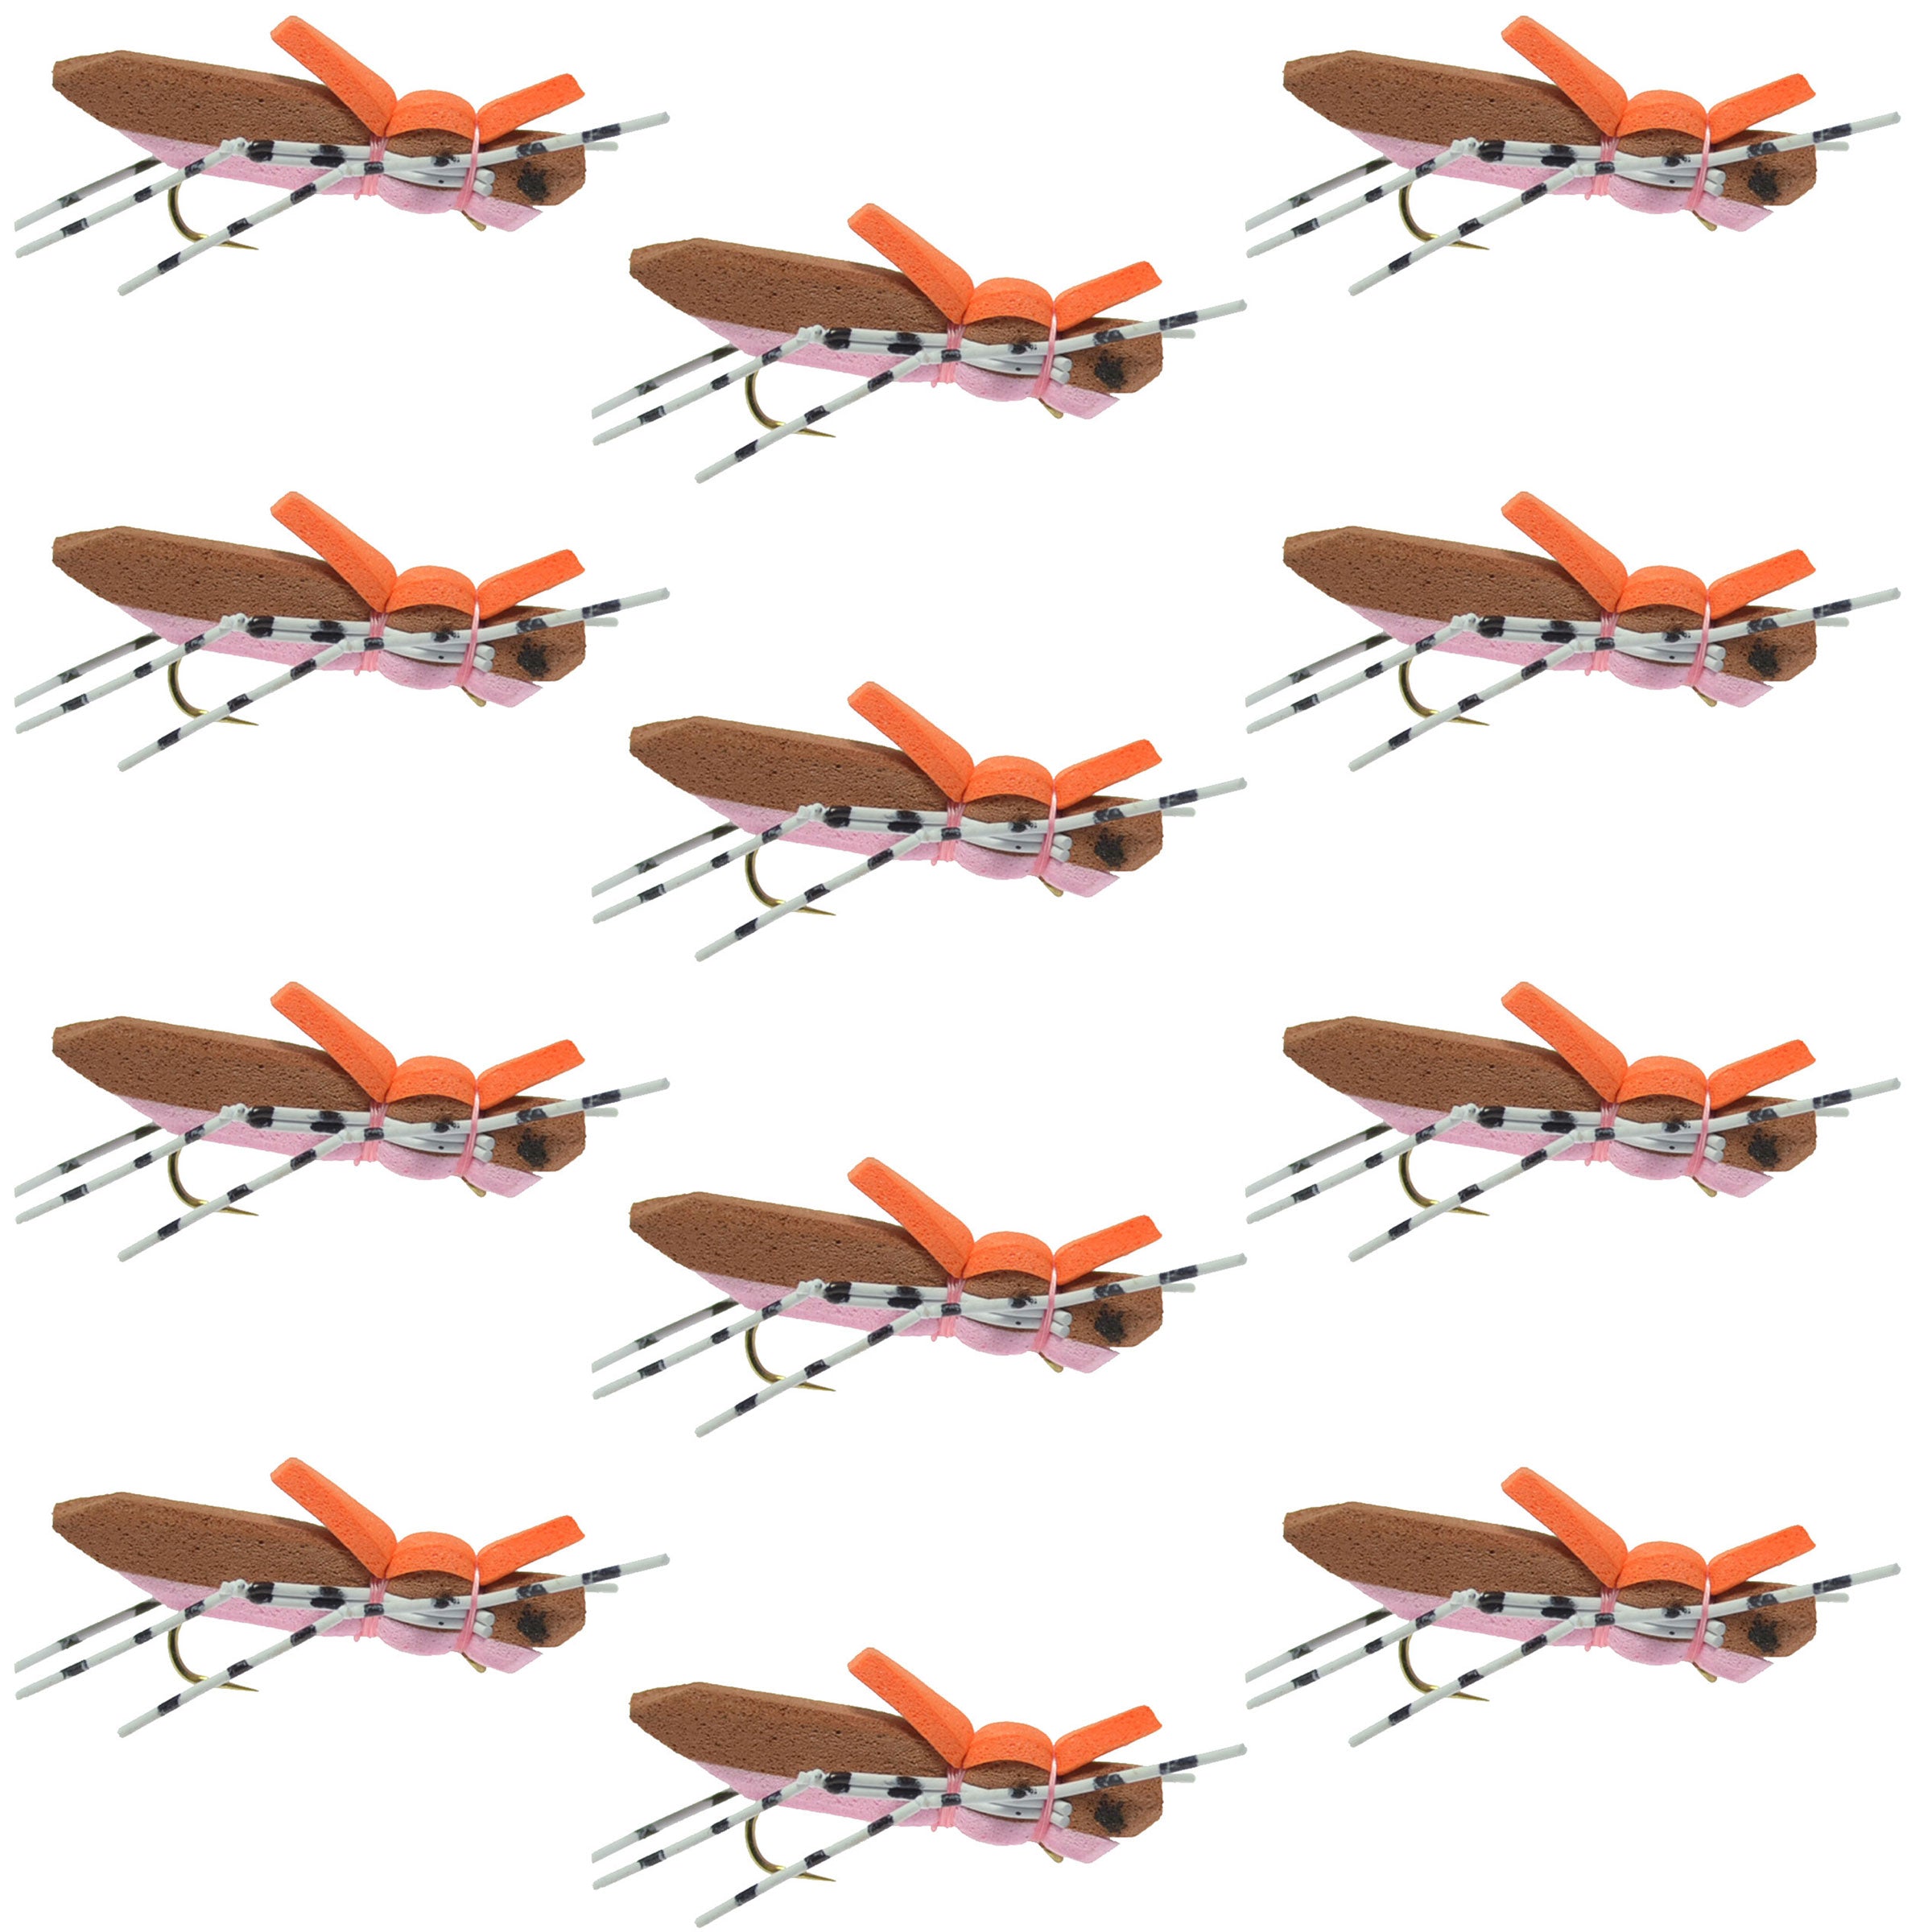 Moorish Hopper - Mosca de saltamontes con cuerpo de espuma, color marrón y rosa, 1 docena de anzuelos para moscas, tamaño 10